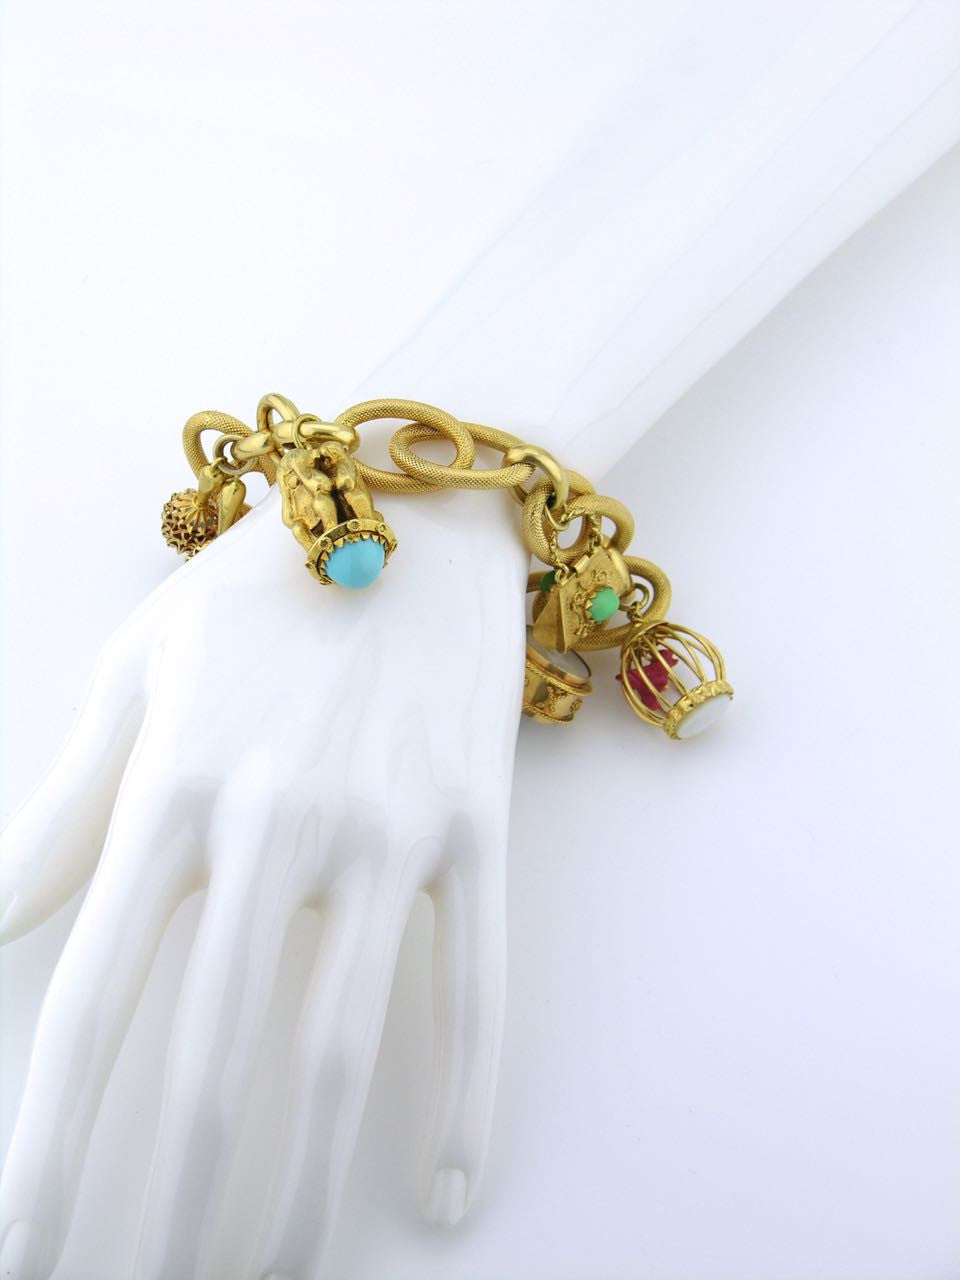 Vintage 18ct Gold Charm Bracelet